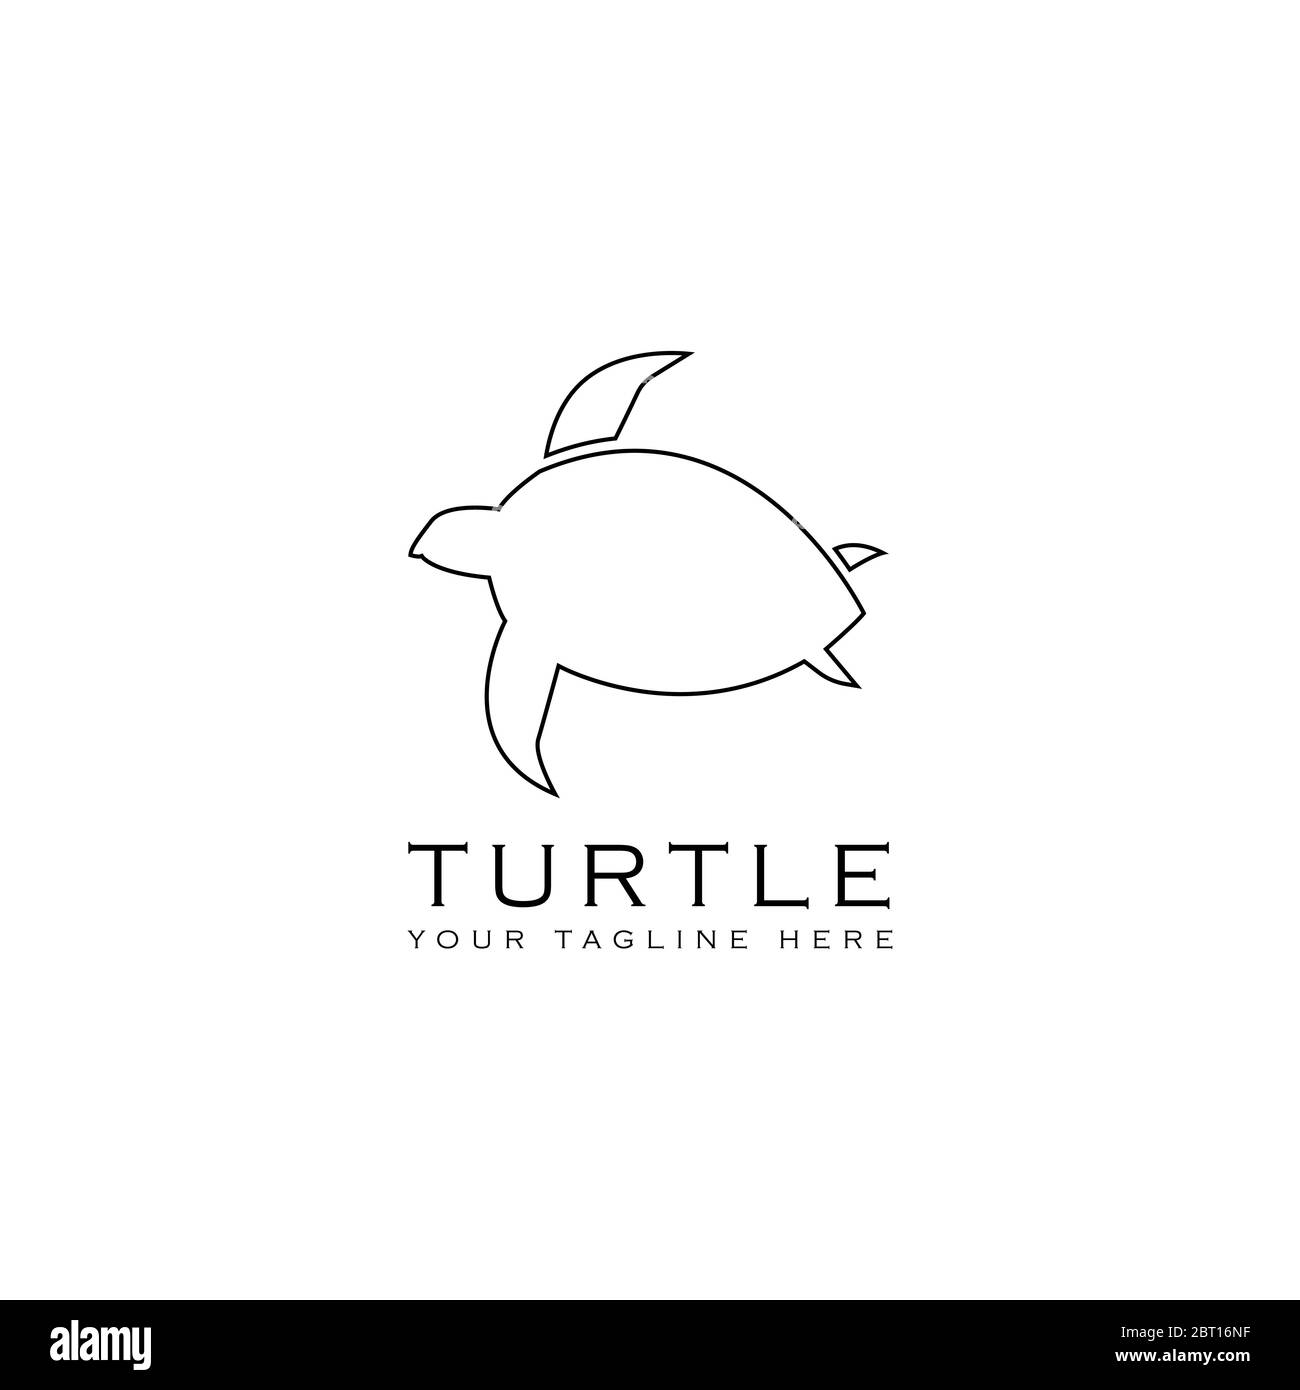 Questo logo mostra una tartaruga. Questo logo è adatto per l'uso come logo aziendale o aziendale impegnato in osservatori animali e marini. Illustrazione Vettoriale